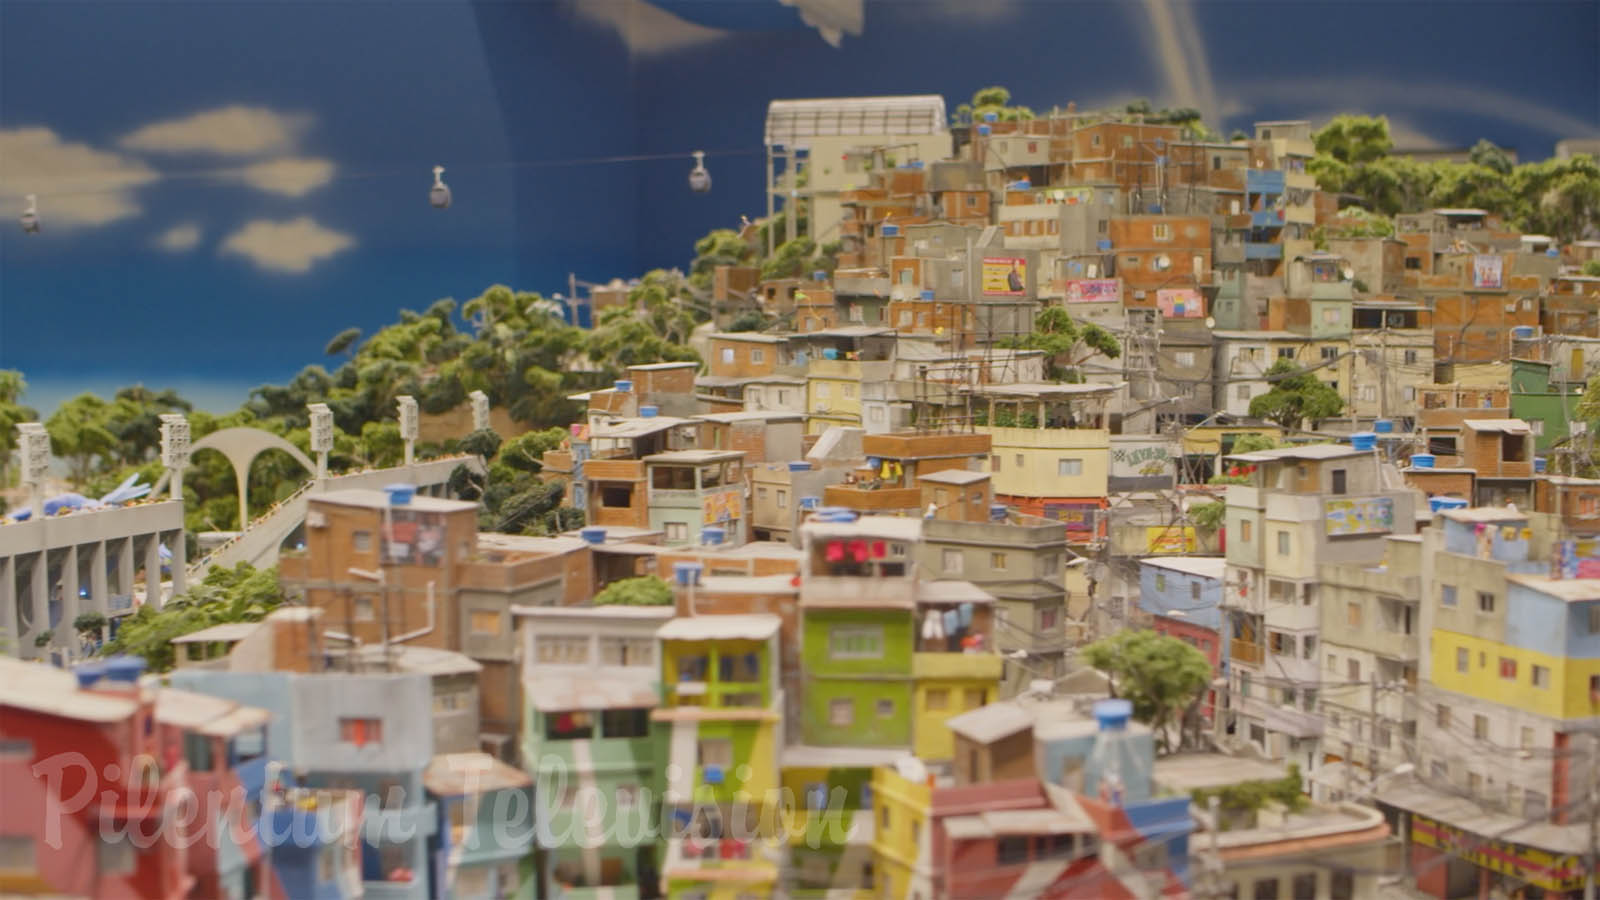 El fantástico diorama de la ciudad de Río de Janeiro en Brasil: Magnífica maqueta de tren en escala HO